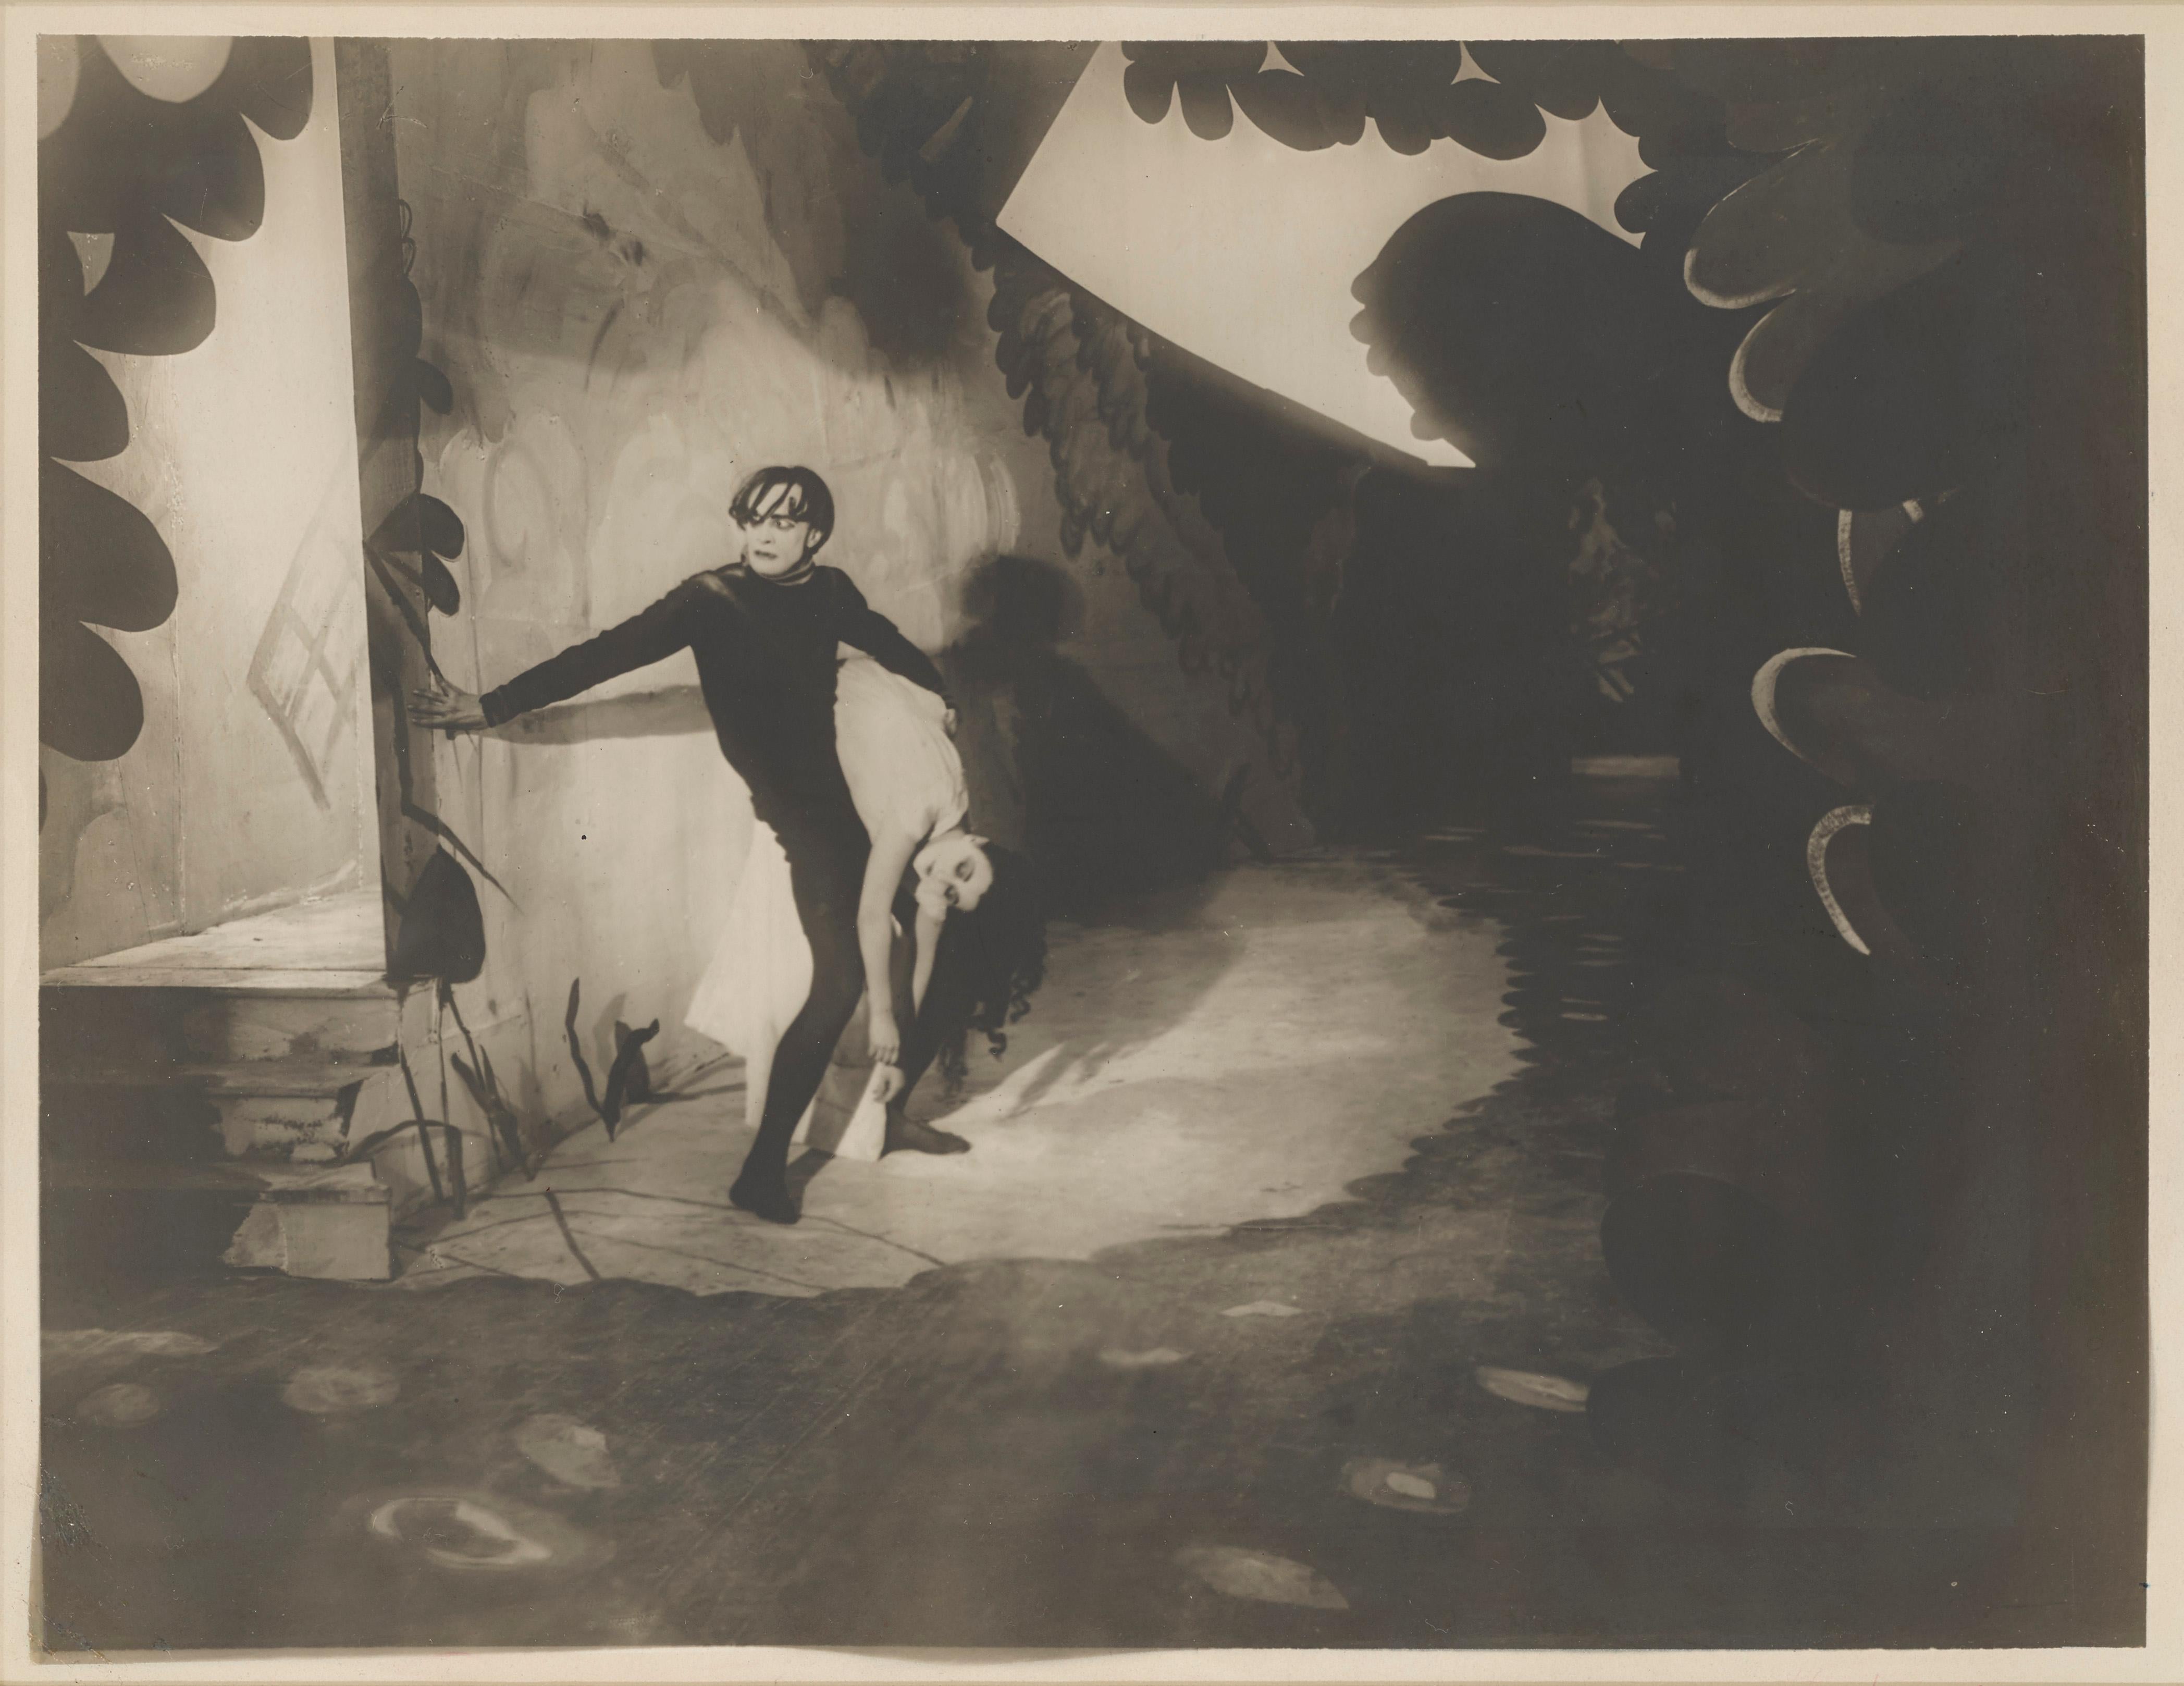 Il s'agit d'une très rare photographie de studio américaine originale surdimensionnée pour les films expressionnistes allemands de 1920 Das cabinett des Dr. Caligari / Le Cabinet du Docteur Caligari.
Ce film marquant a été réalisé par Robert Wiene